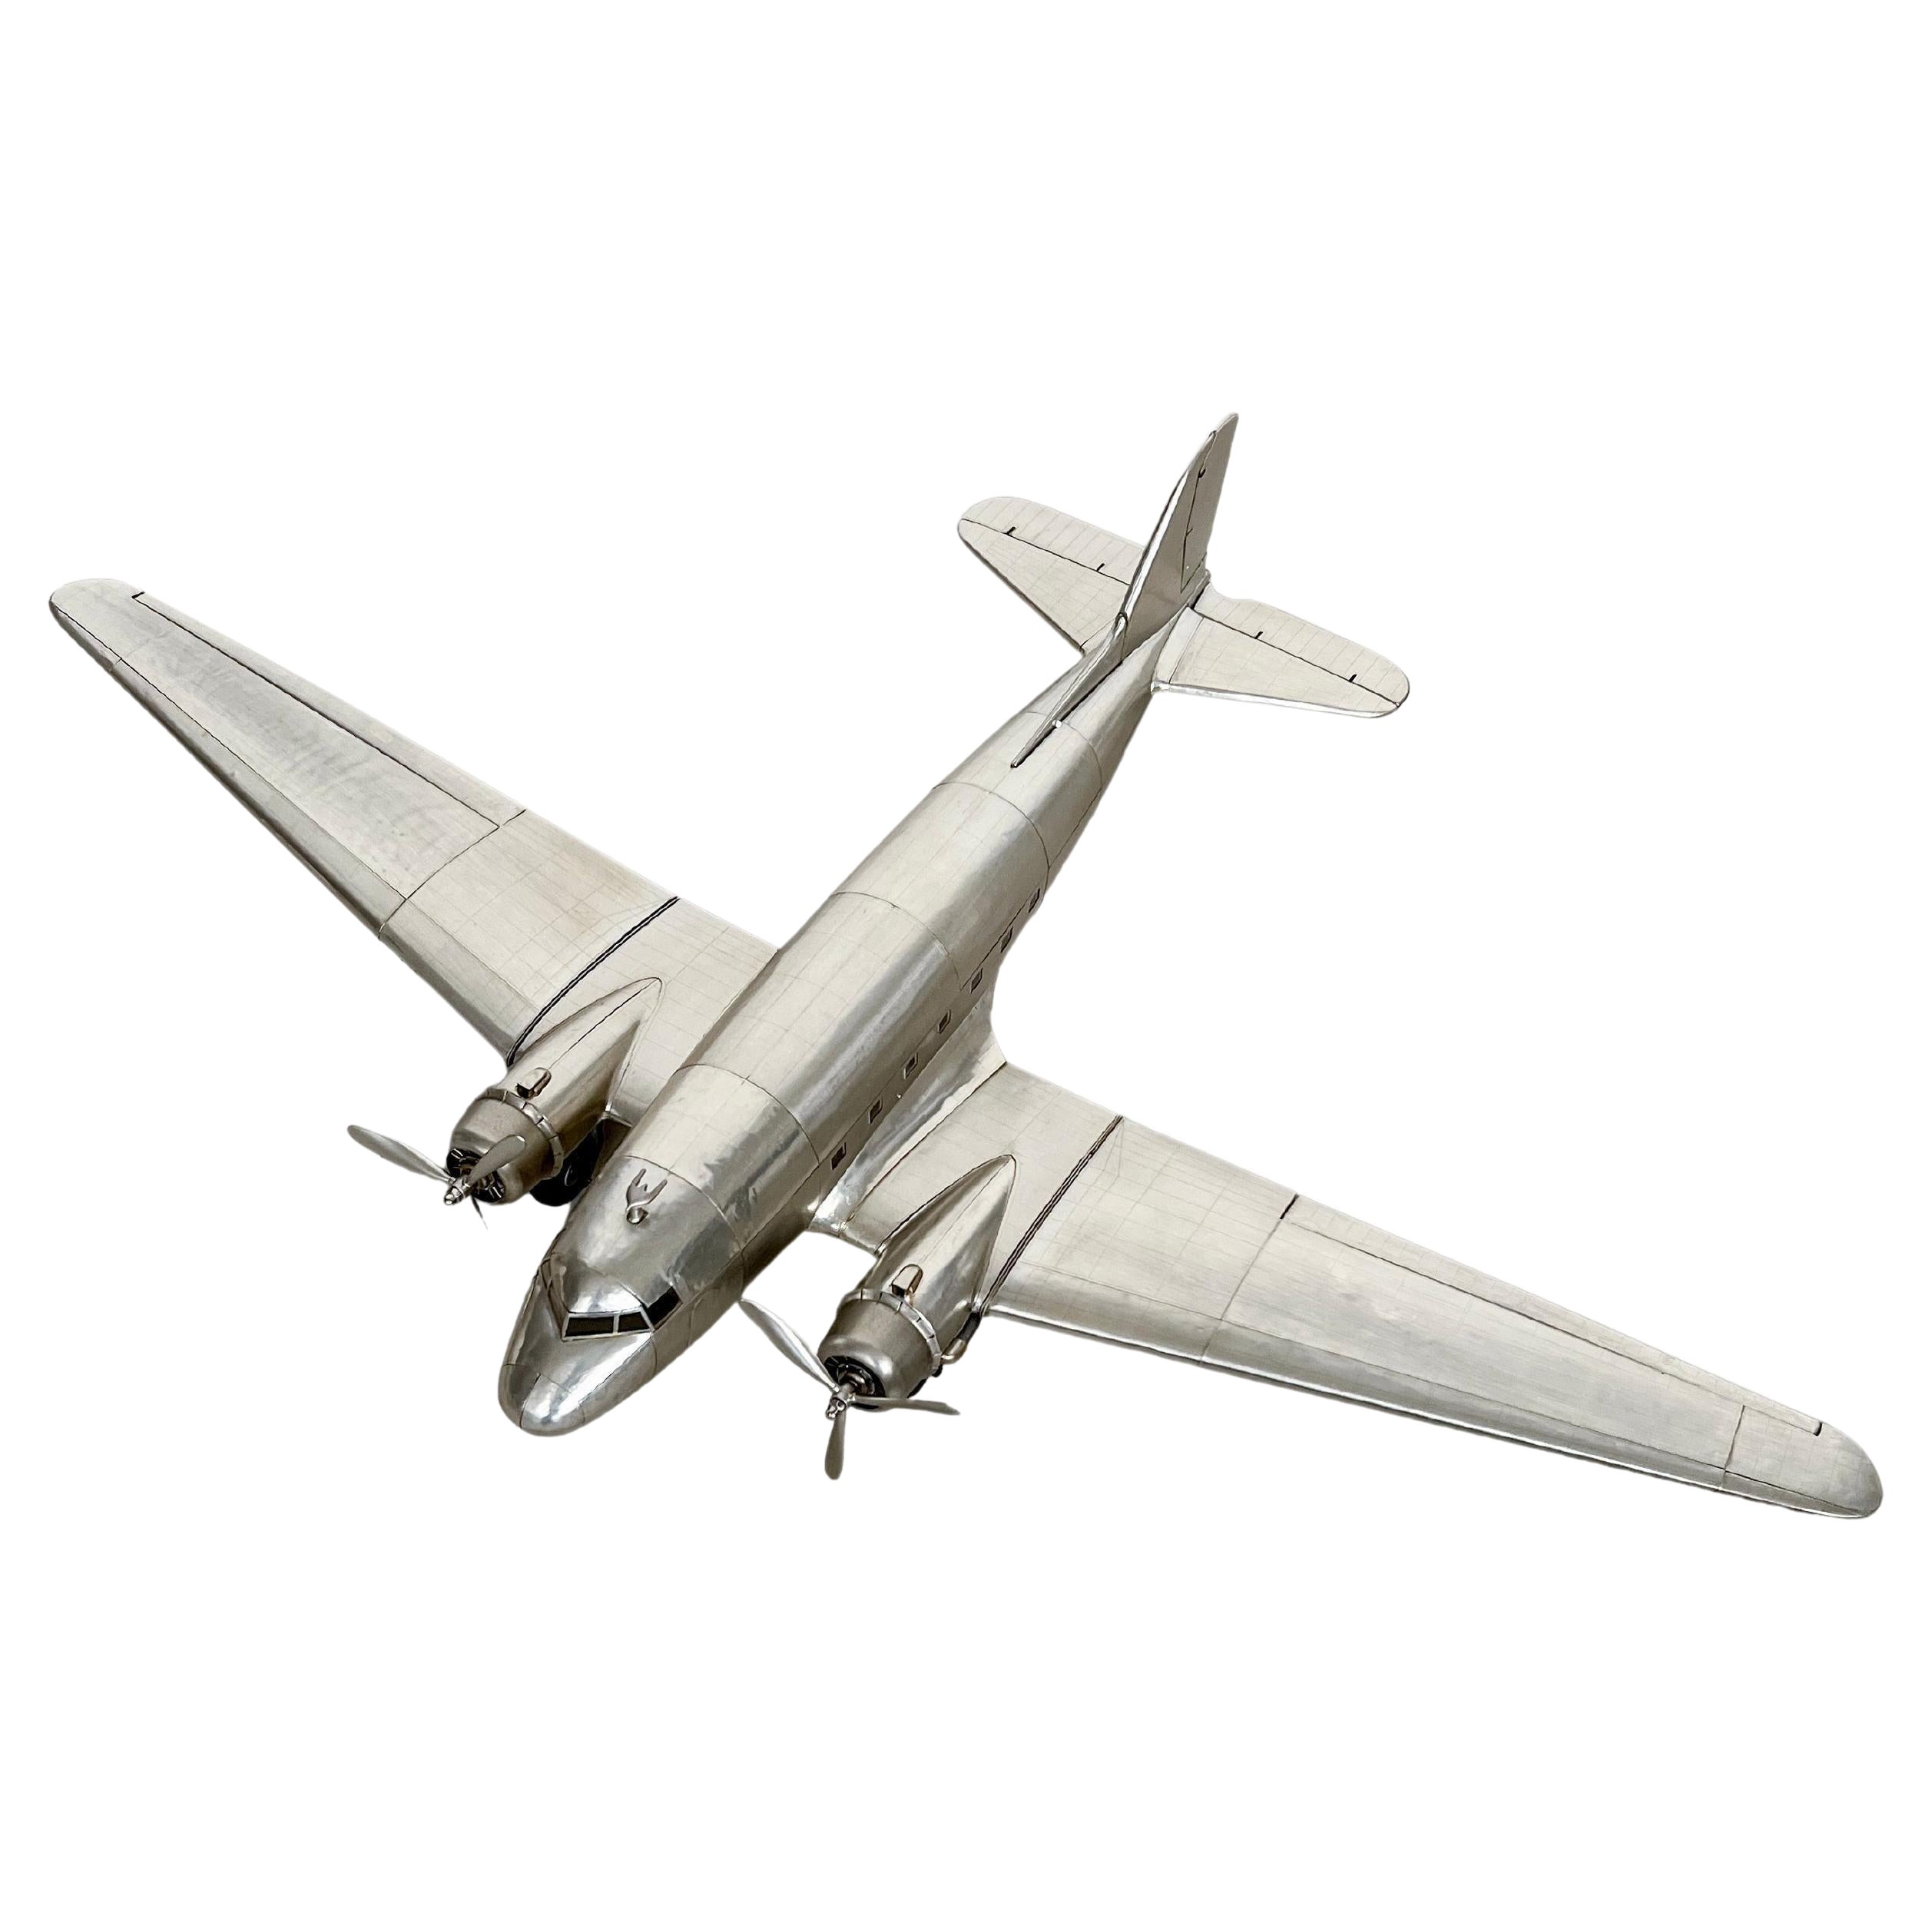 Modèle réduit de l'avion Douglas Dc-3, grande taille, richement détaillé, en métal profilé